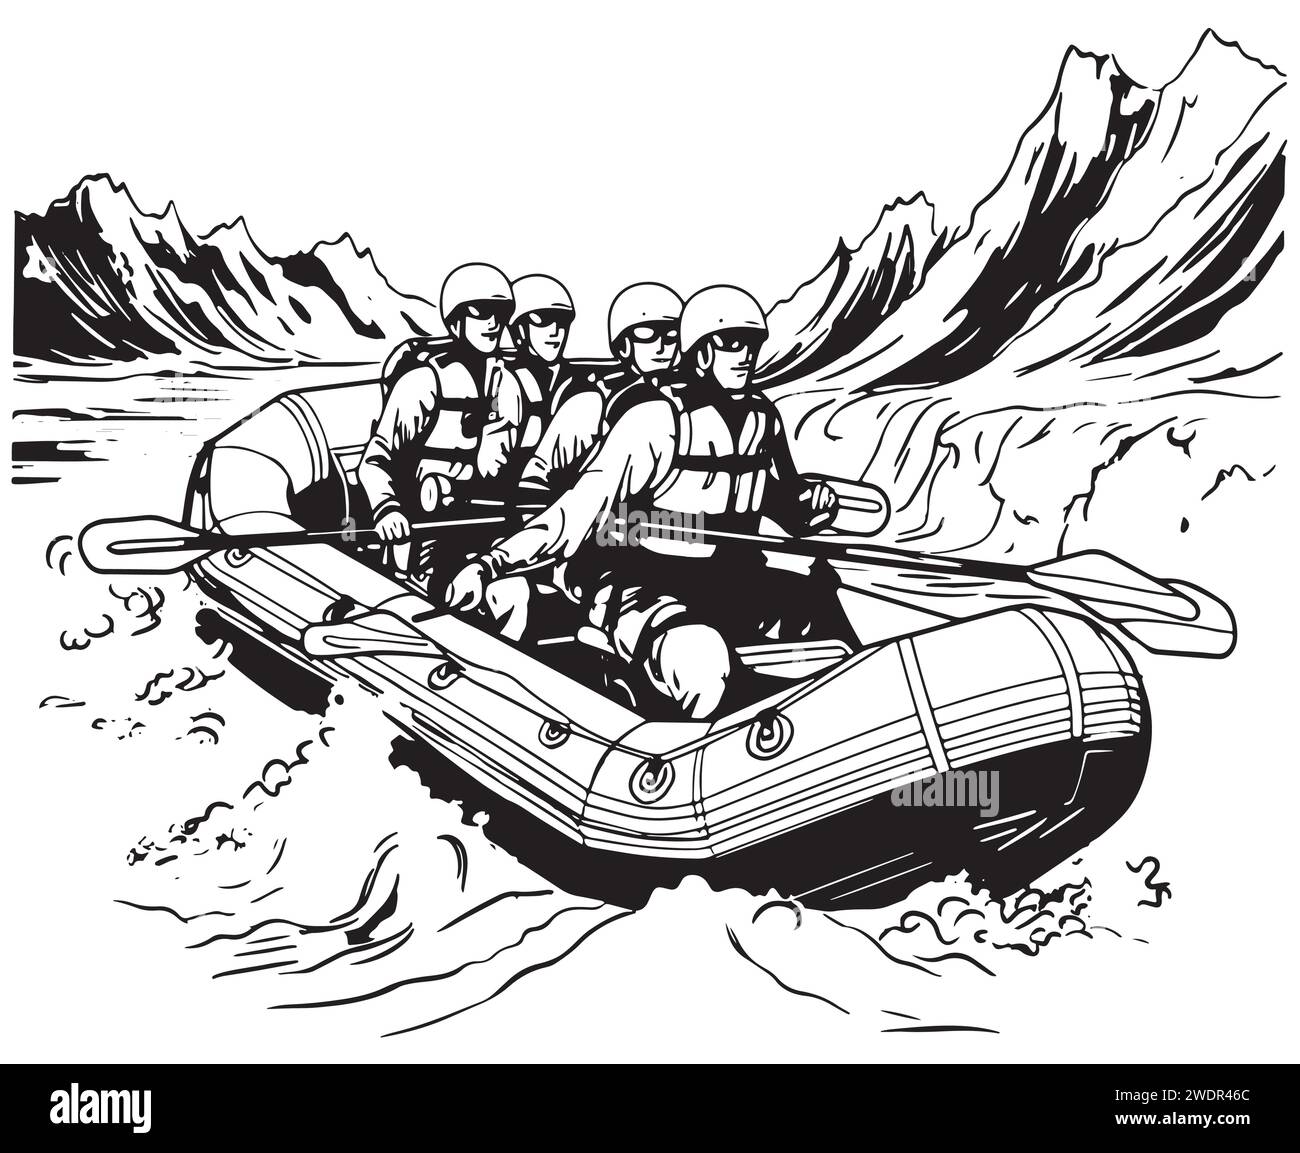 Croquis à la main de personnes sur un radeau rafting sport illustration vectorielle Illustration de Vecteur